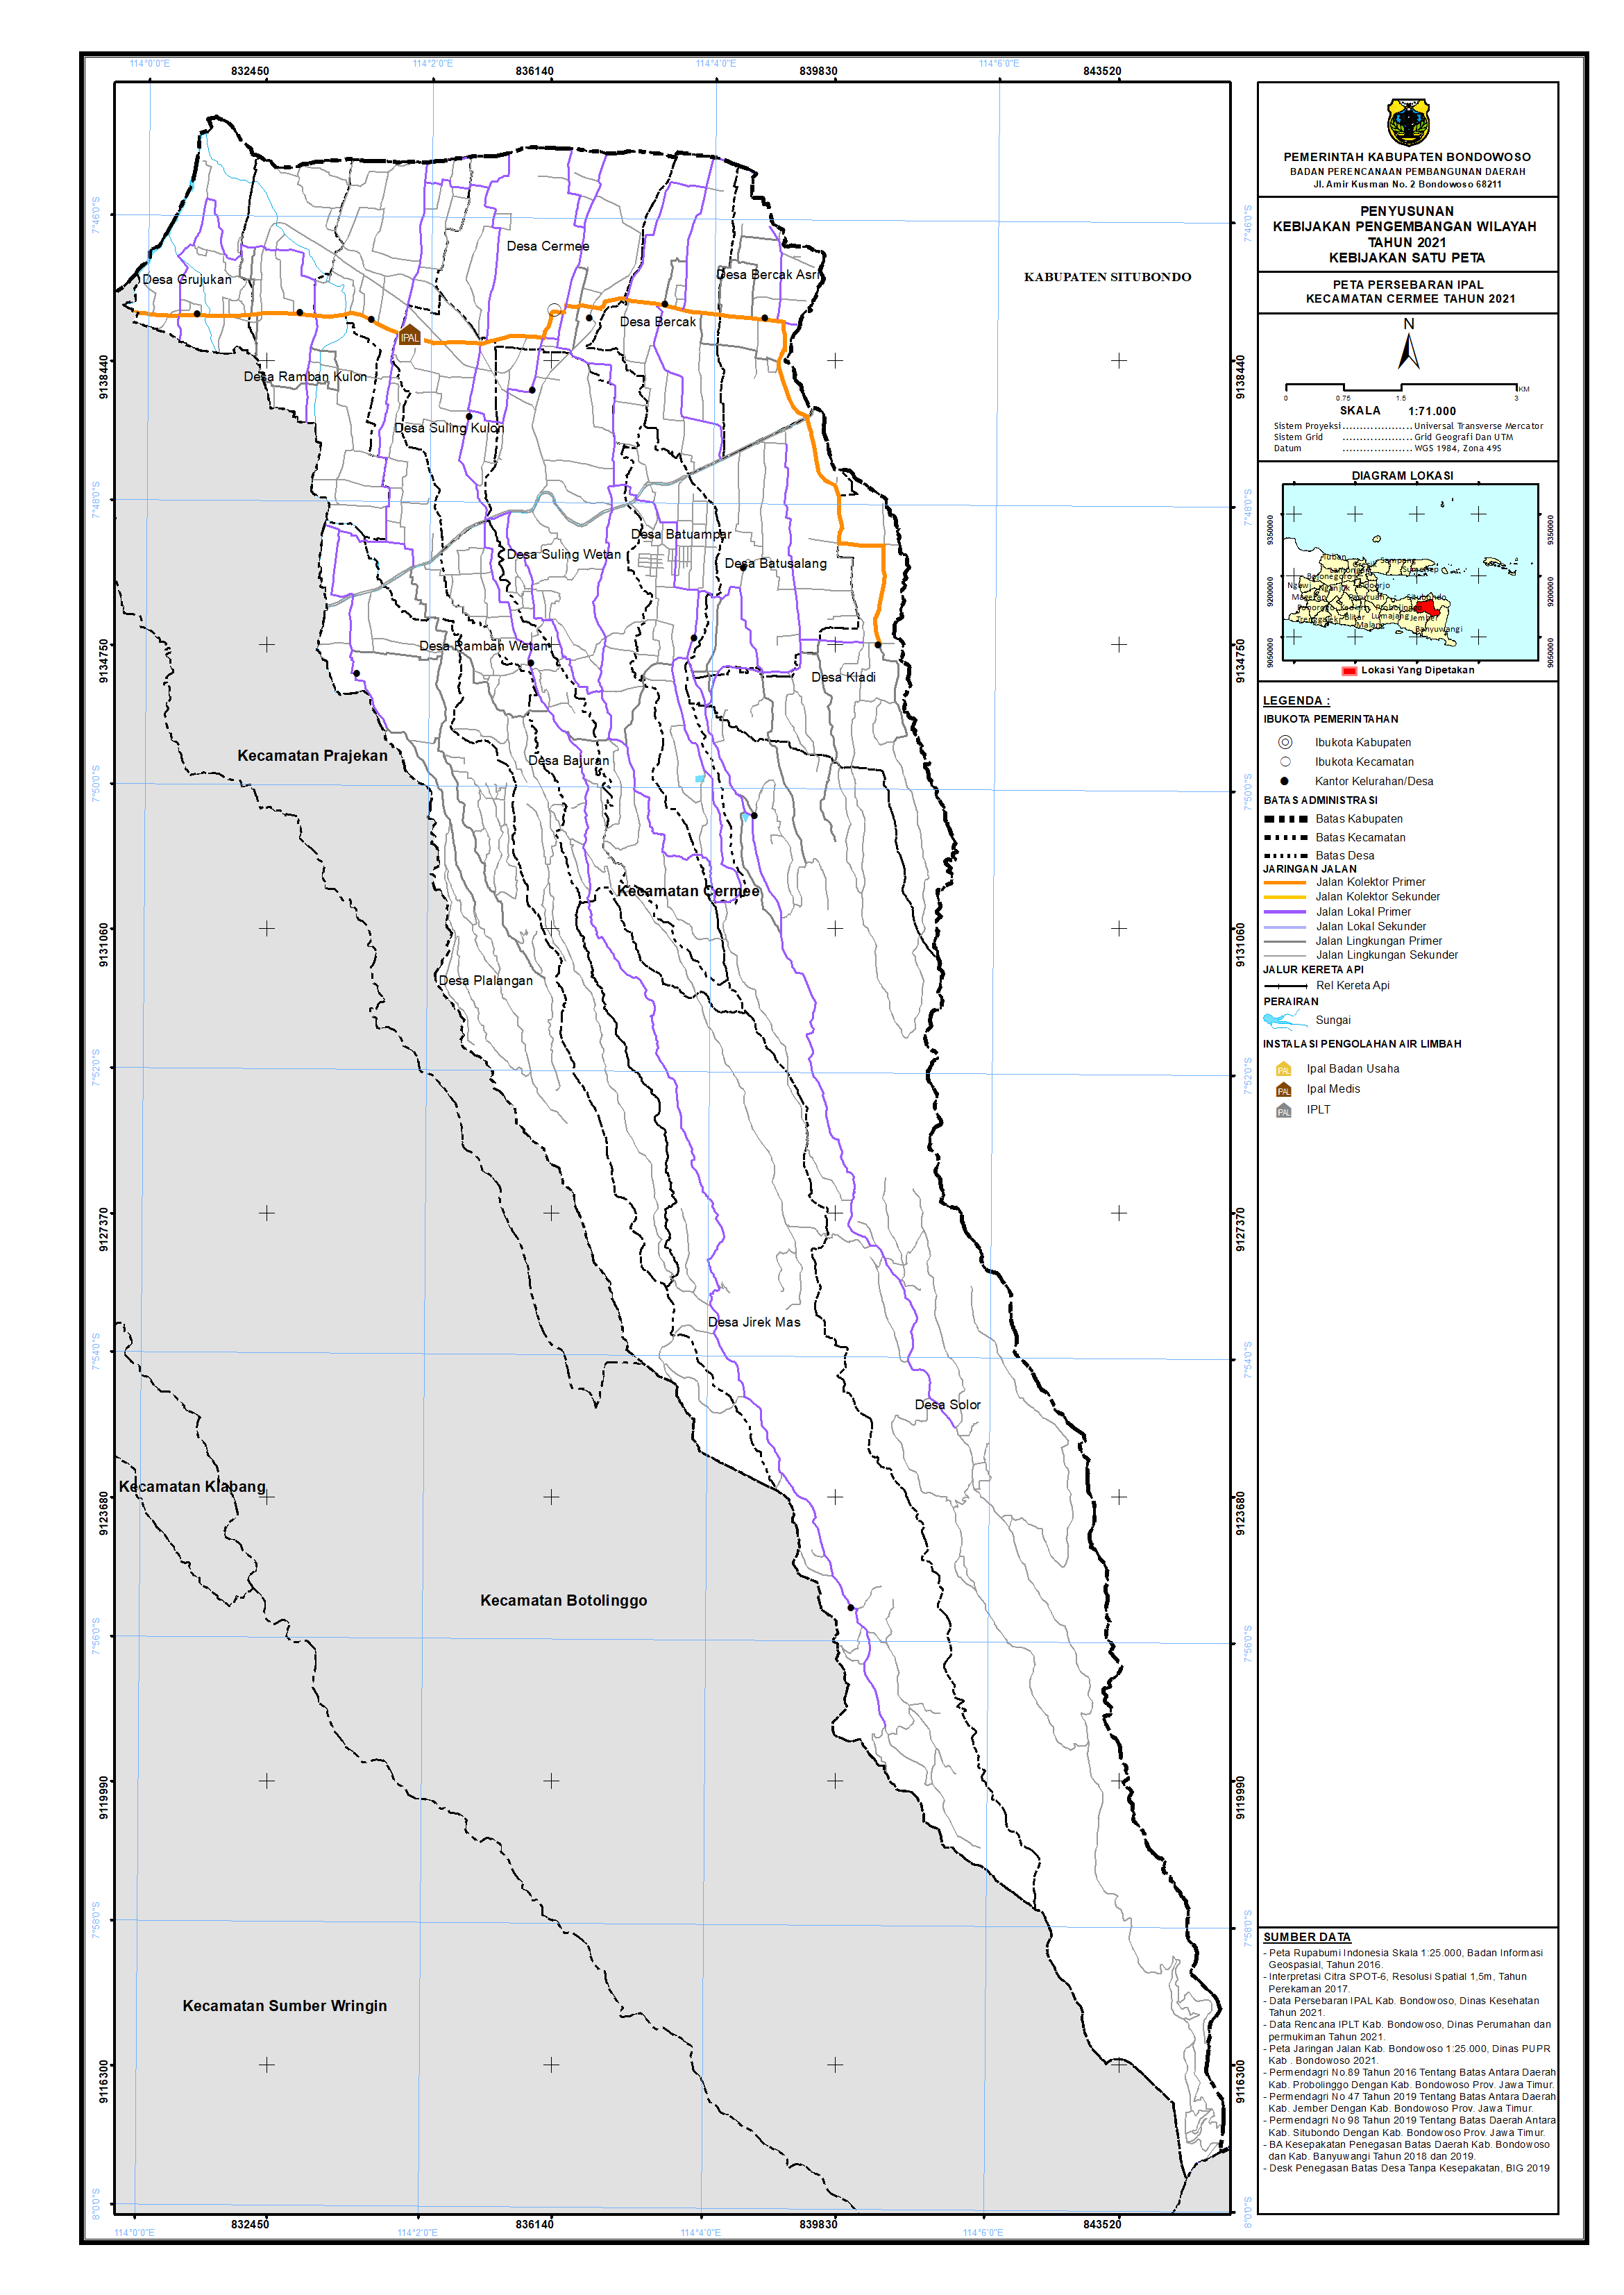 Peta Persebaran IPAL Kecamatan Cermee.png